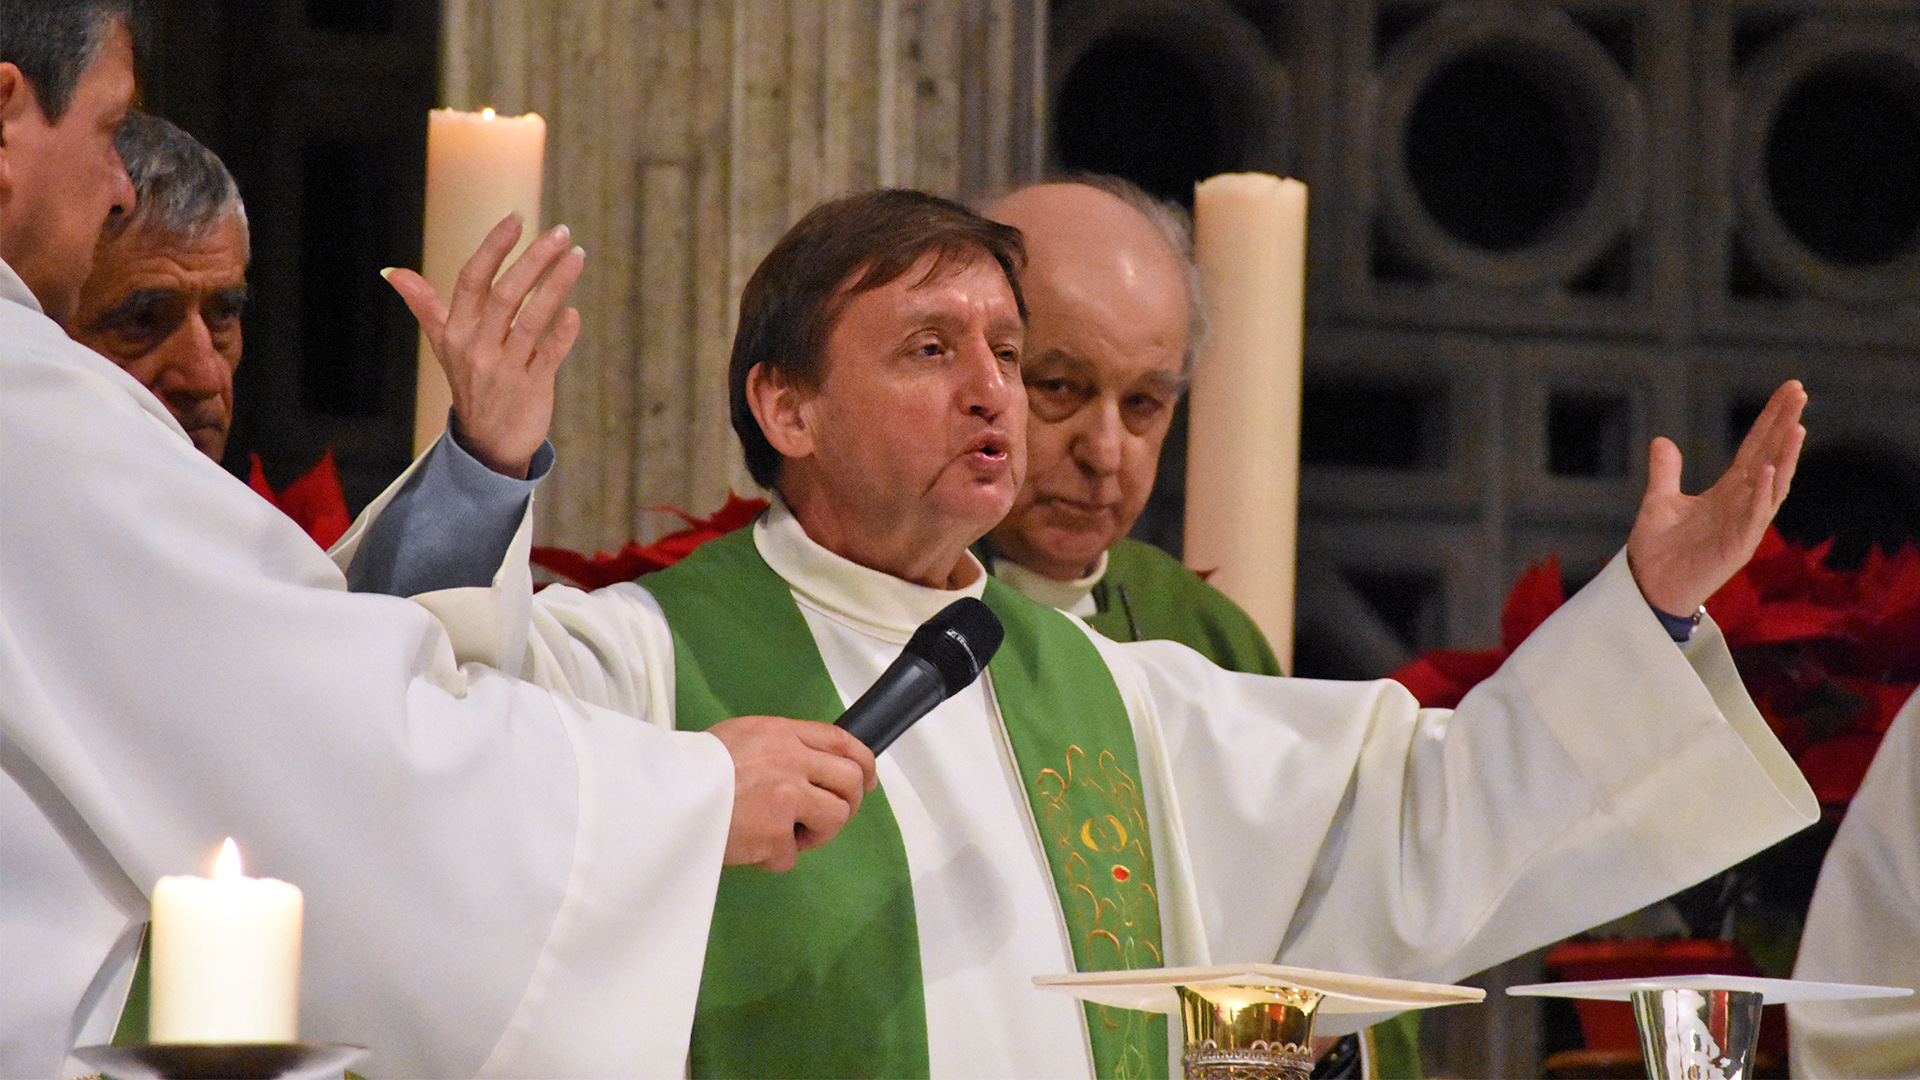 L'abbé François-Xavier Amherdt est membre de la présidence de la commission pastorale de la Conférence des évêques suisses | © Grégory Roth